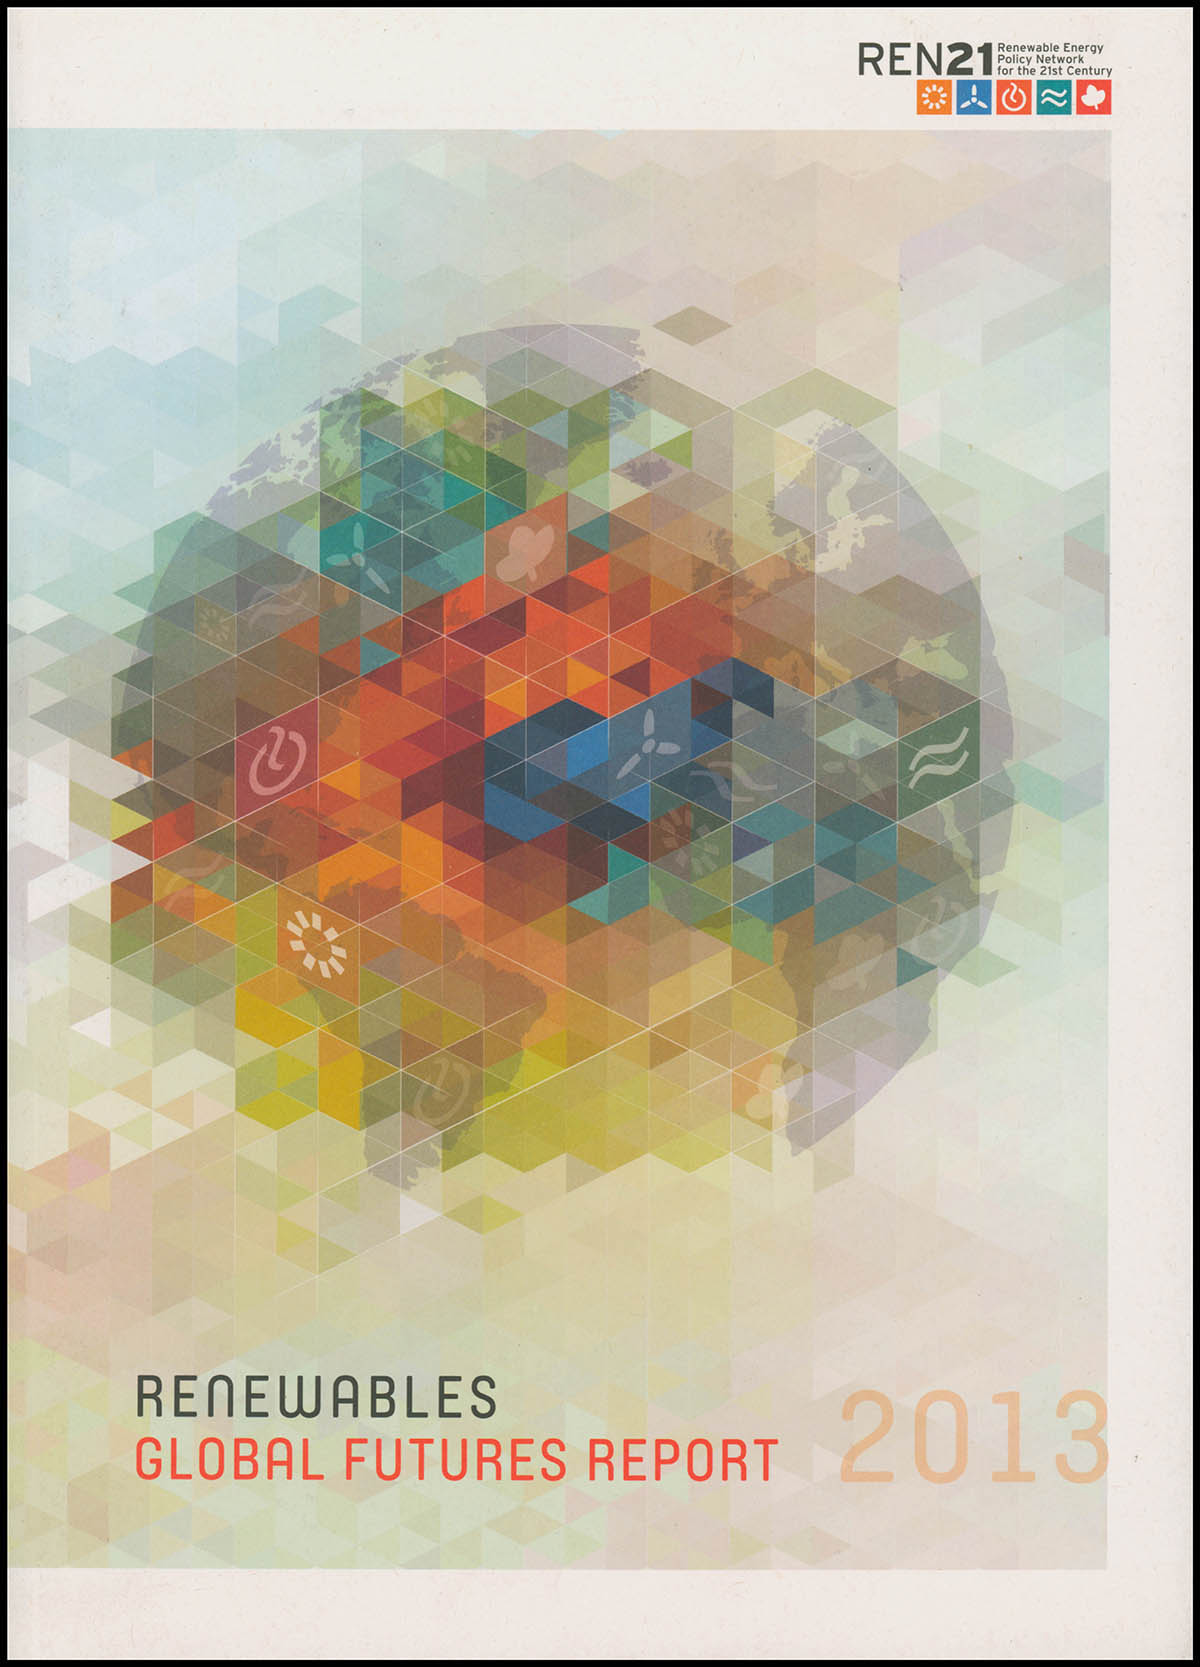 Ren21 - Renewables Global Futures Report 2013